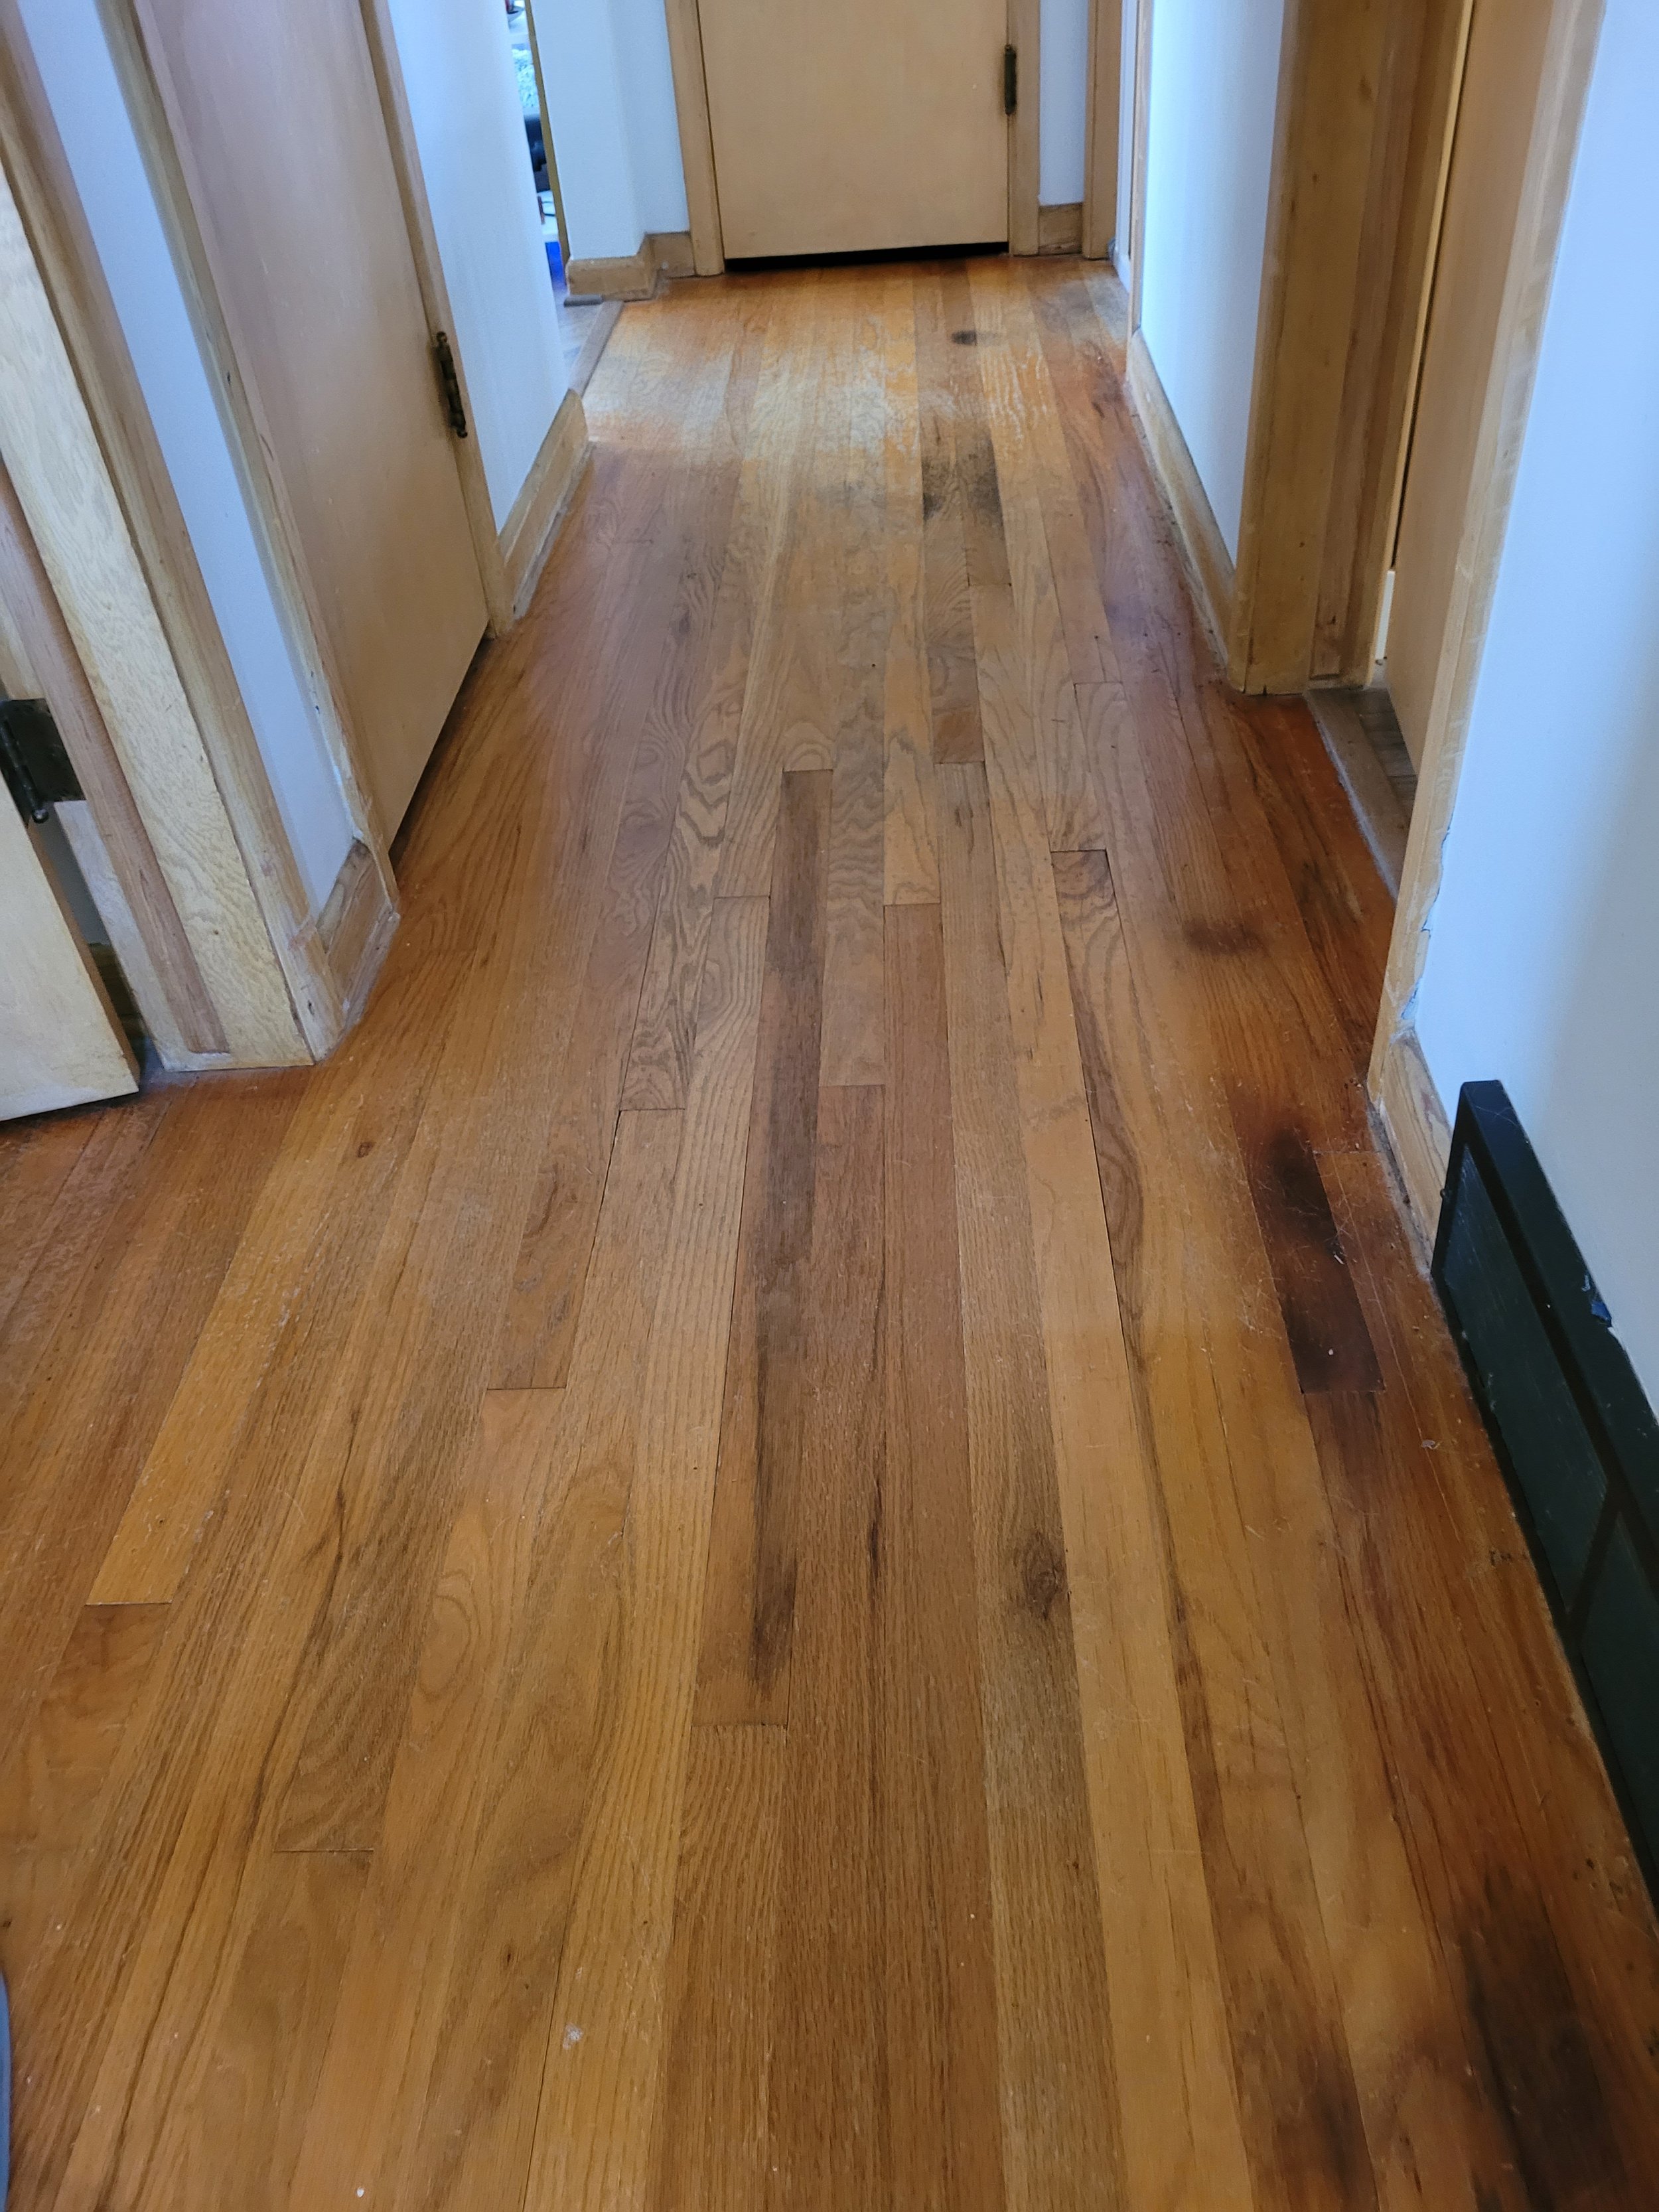 Original Hardwood Floors